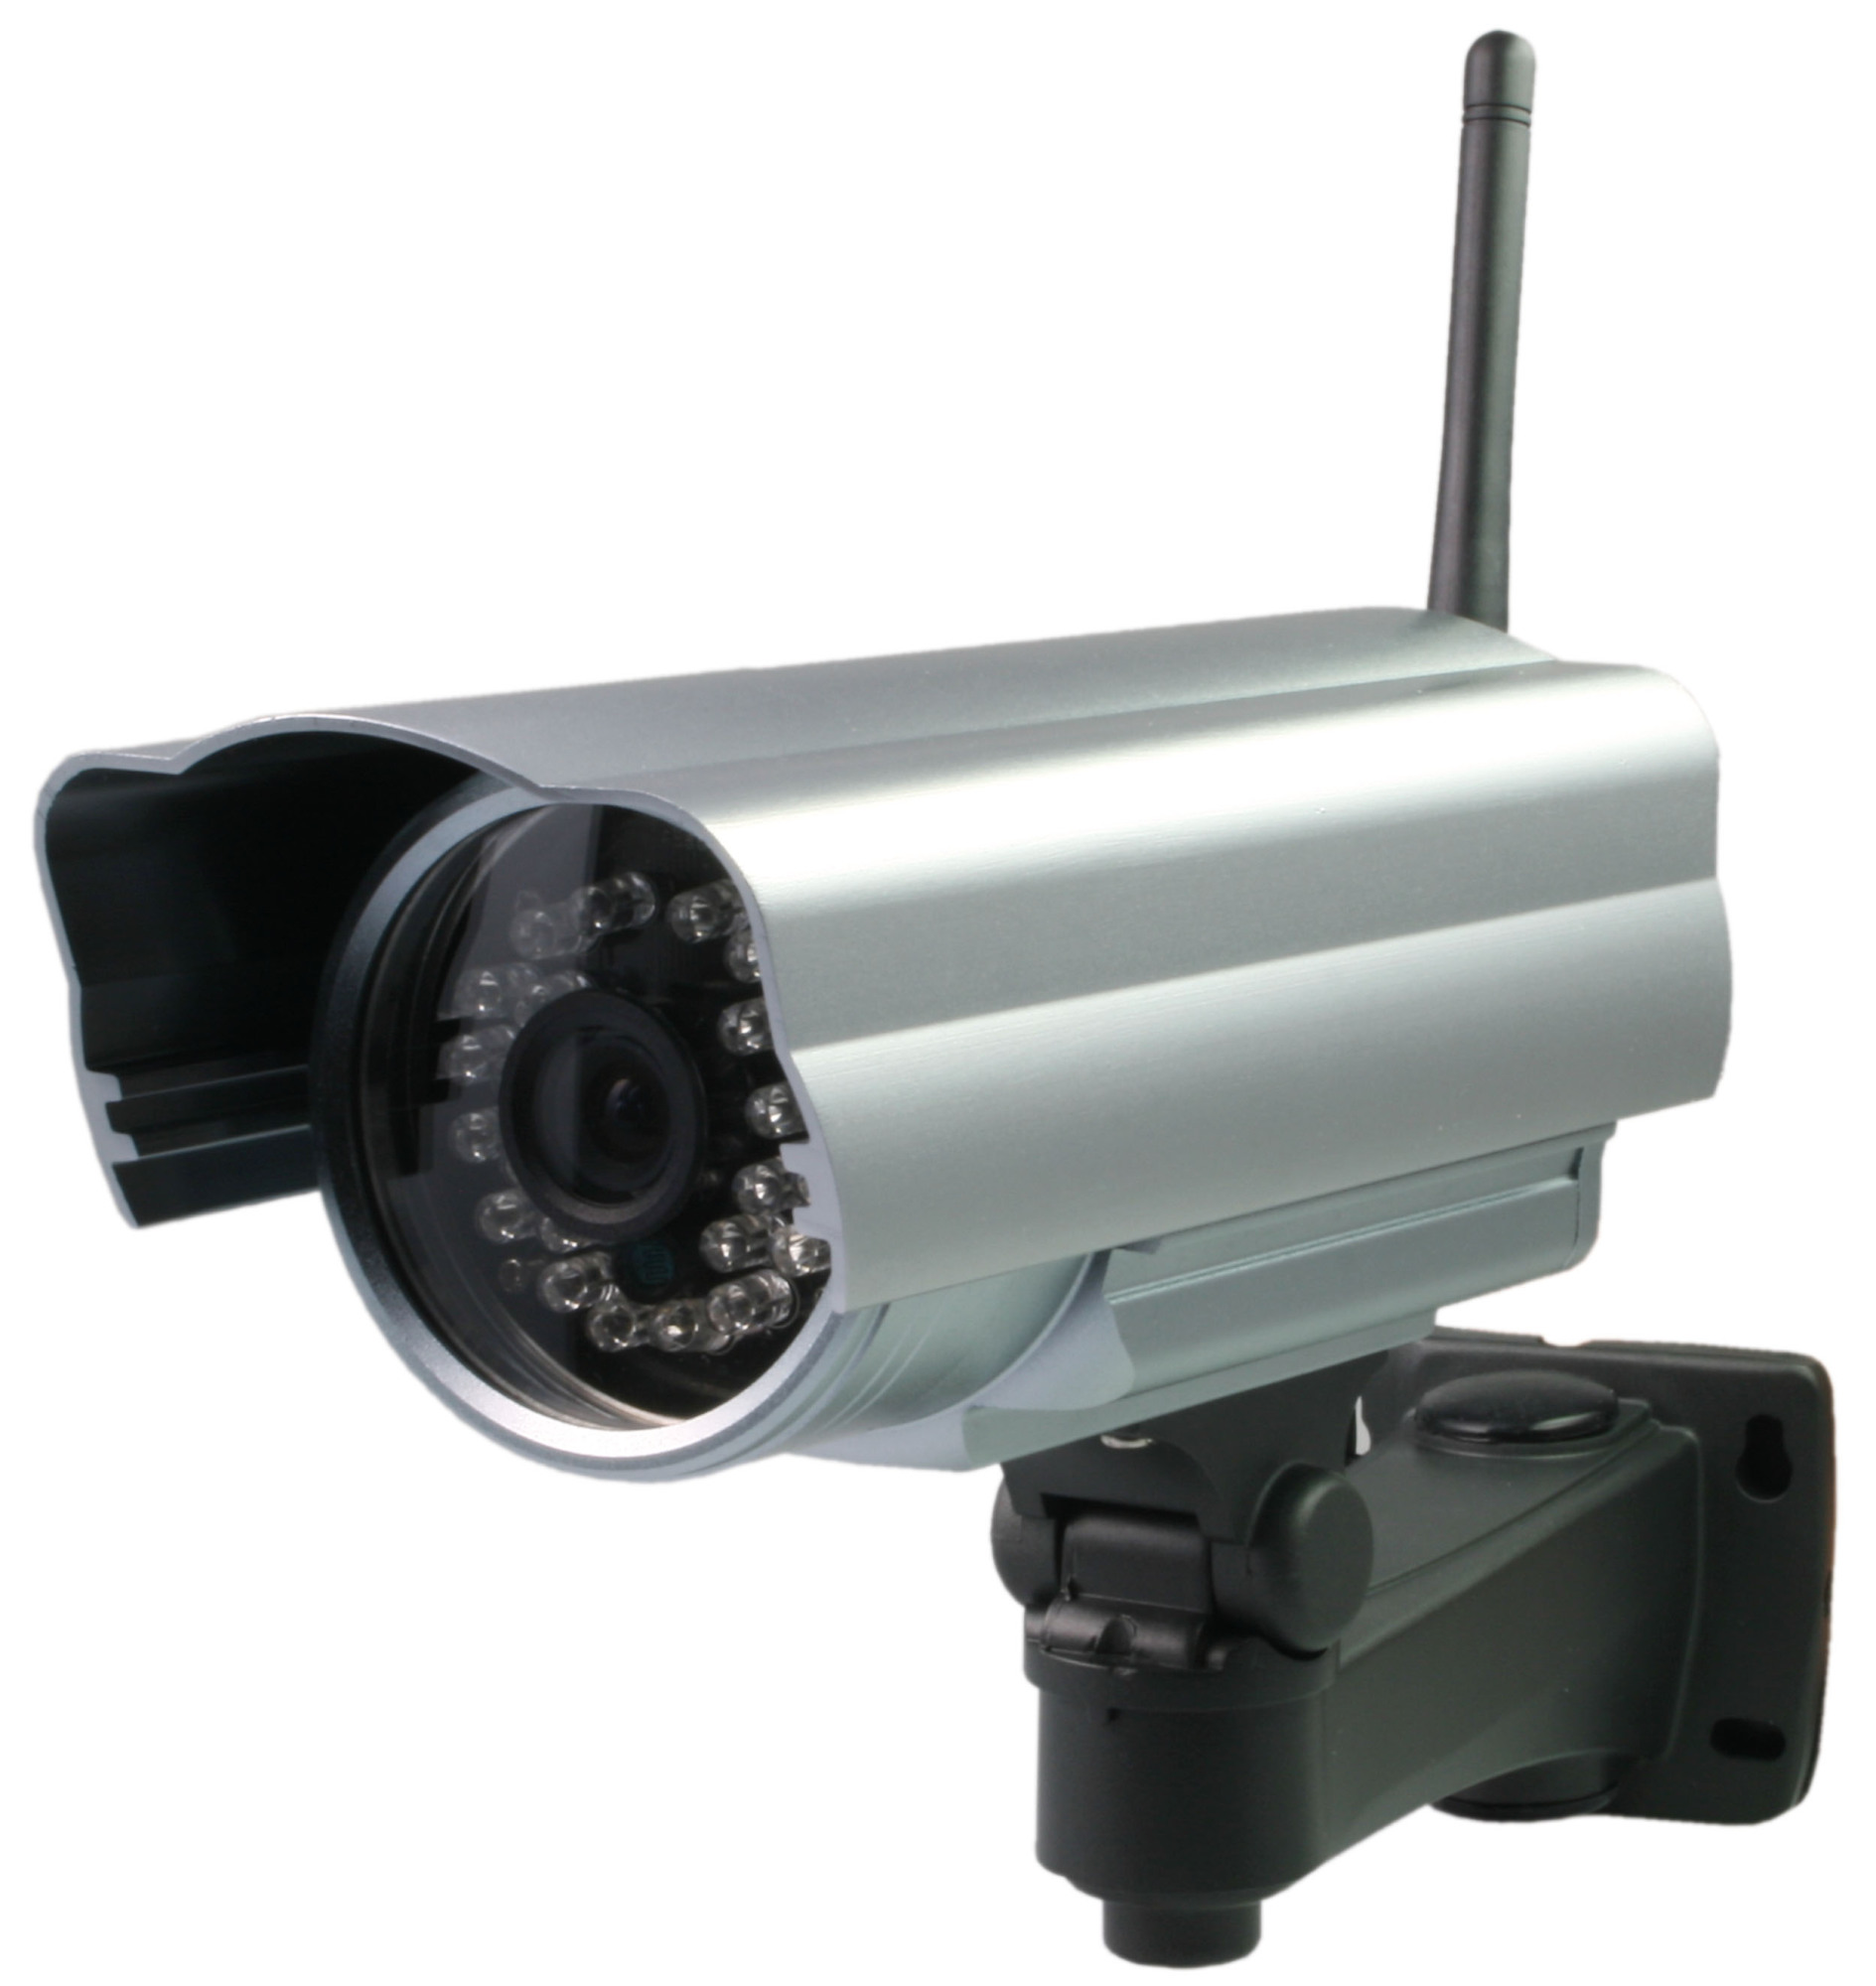 IP-Kameras von Aldi mit massiven Sicherheitslücken | heise online